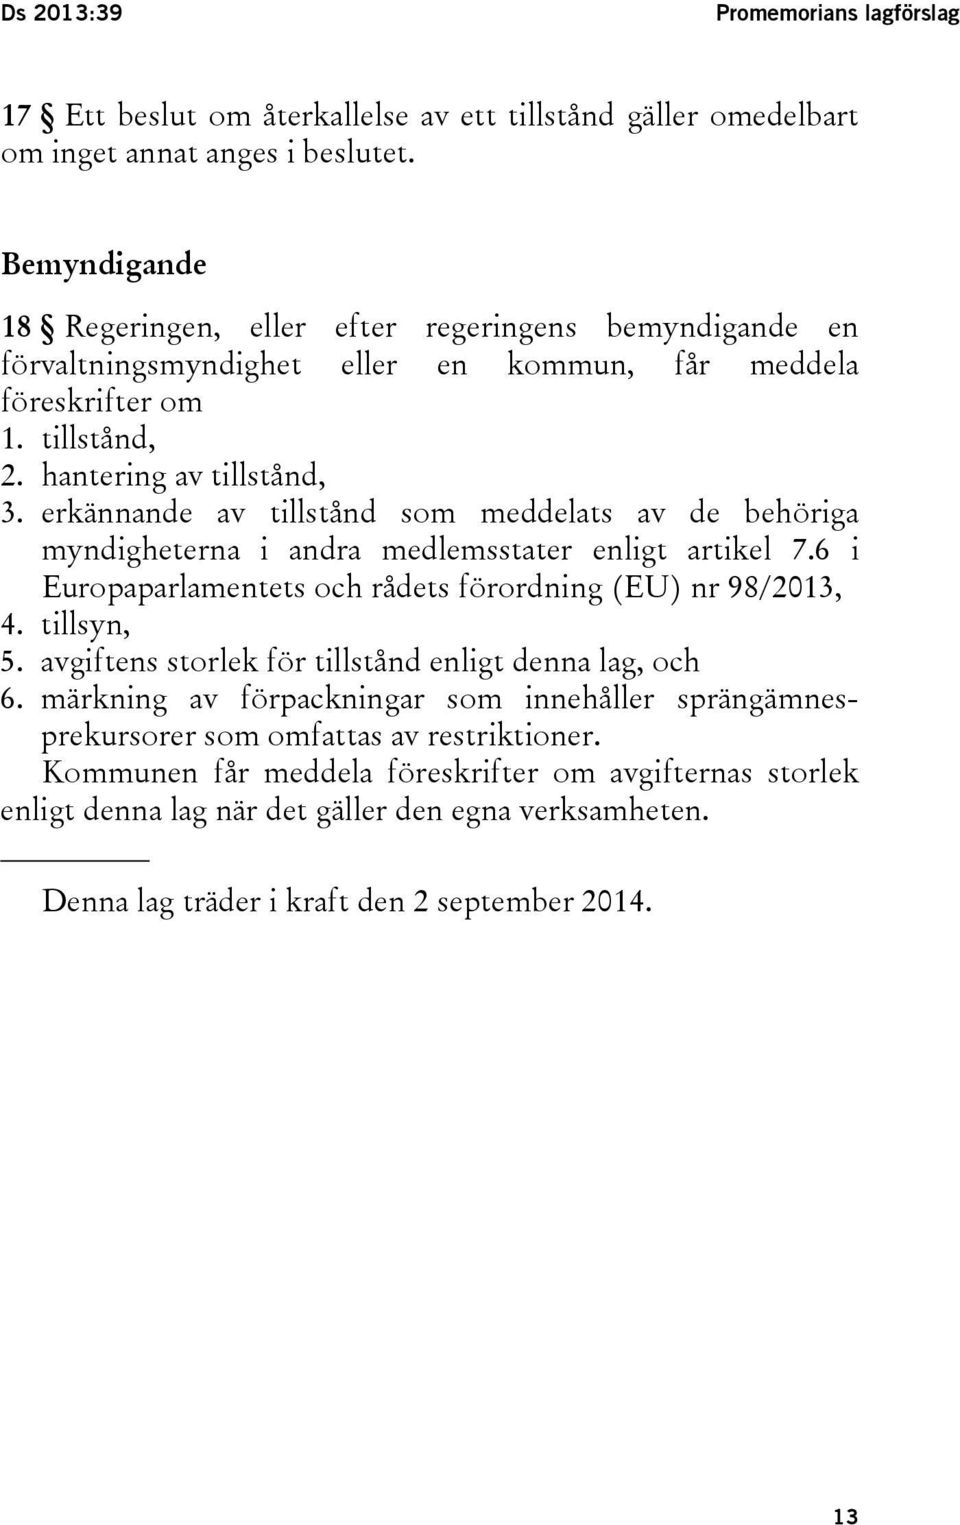 erkännande av tillstånd som meddelats av de behöriga myndigheterna i andra medlemsstater enligt artikel 7.6 i Europaparlamentets och rådets förordning (EU) nr 98/2013, 4. tillsyn, 5.